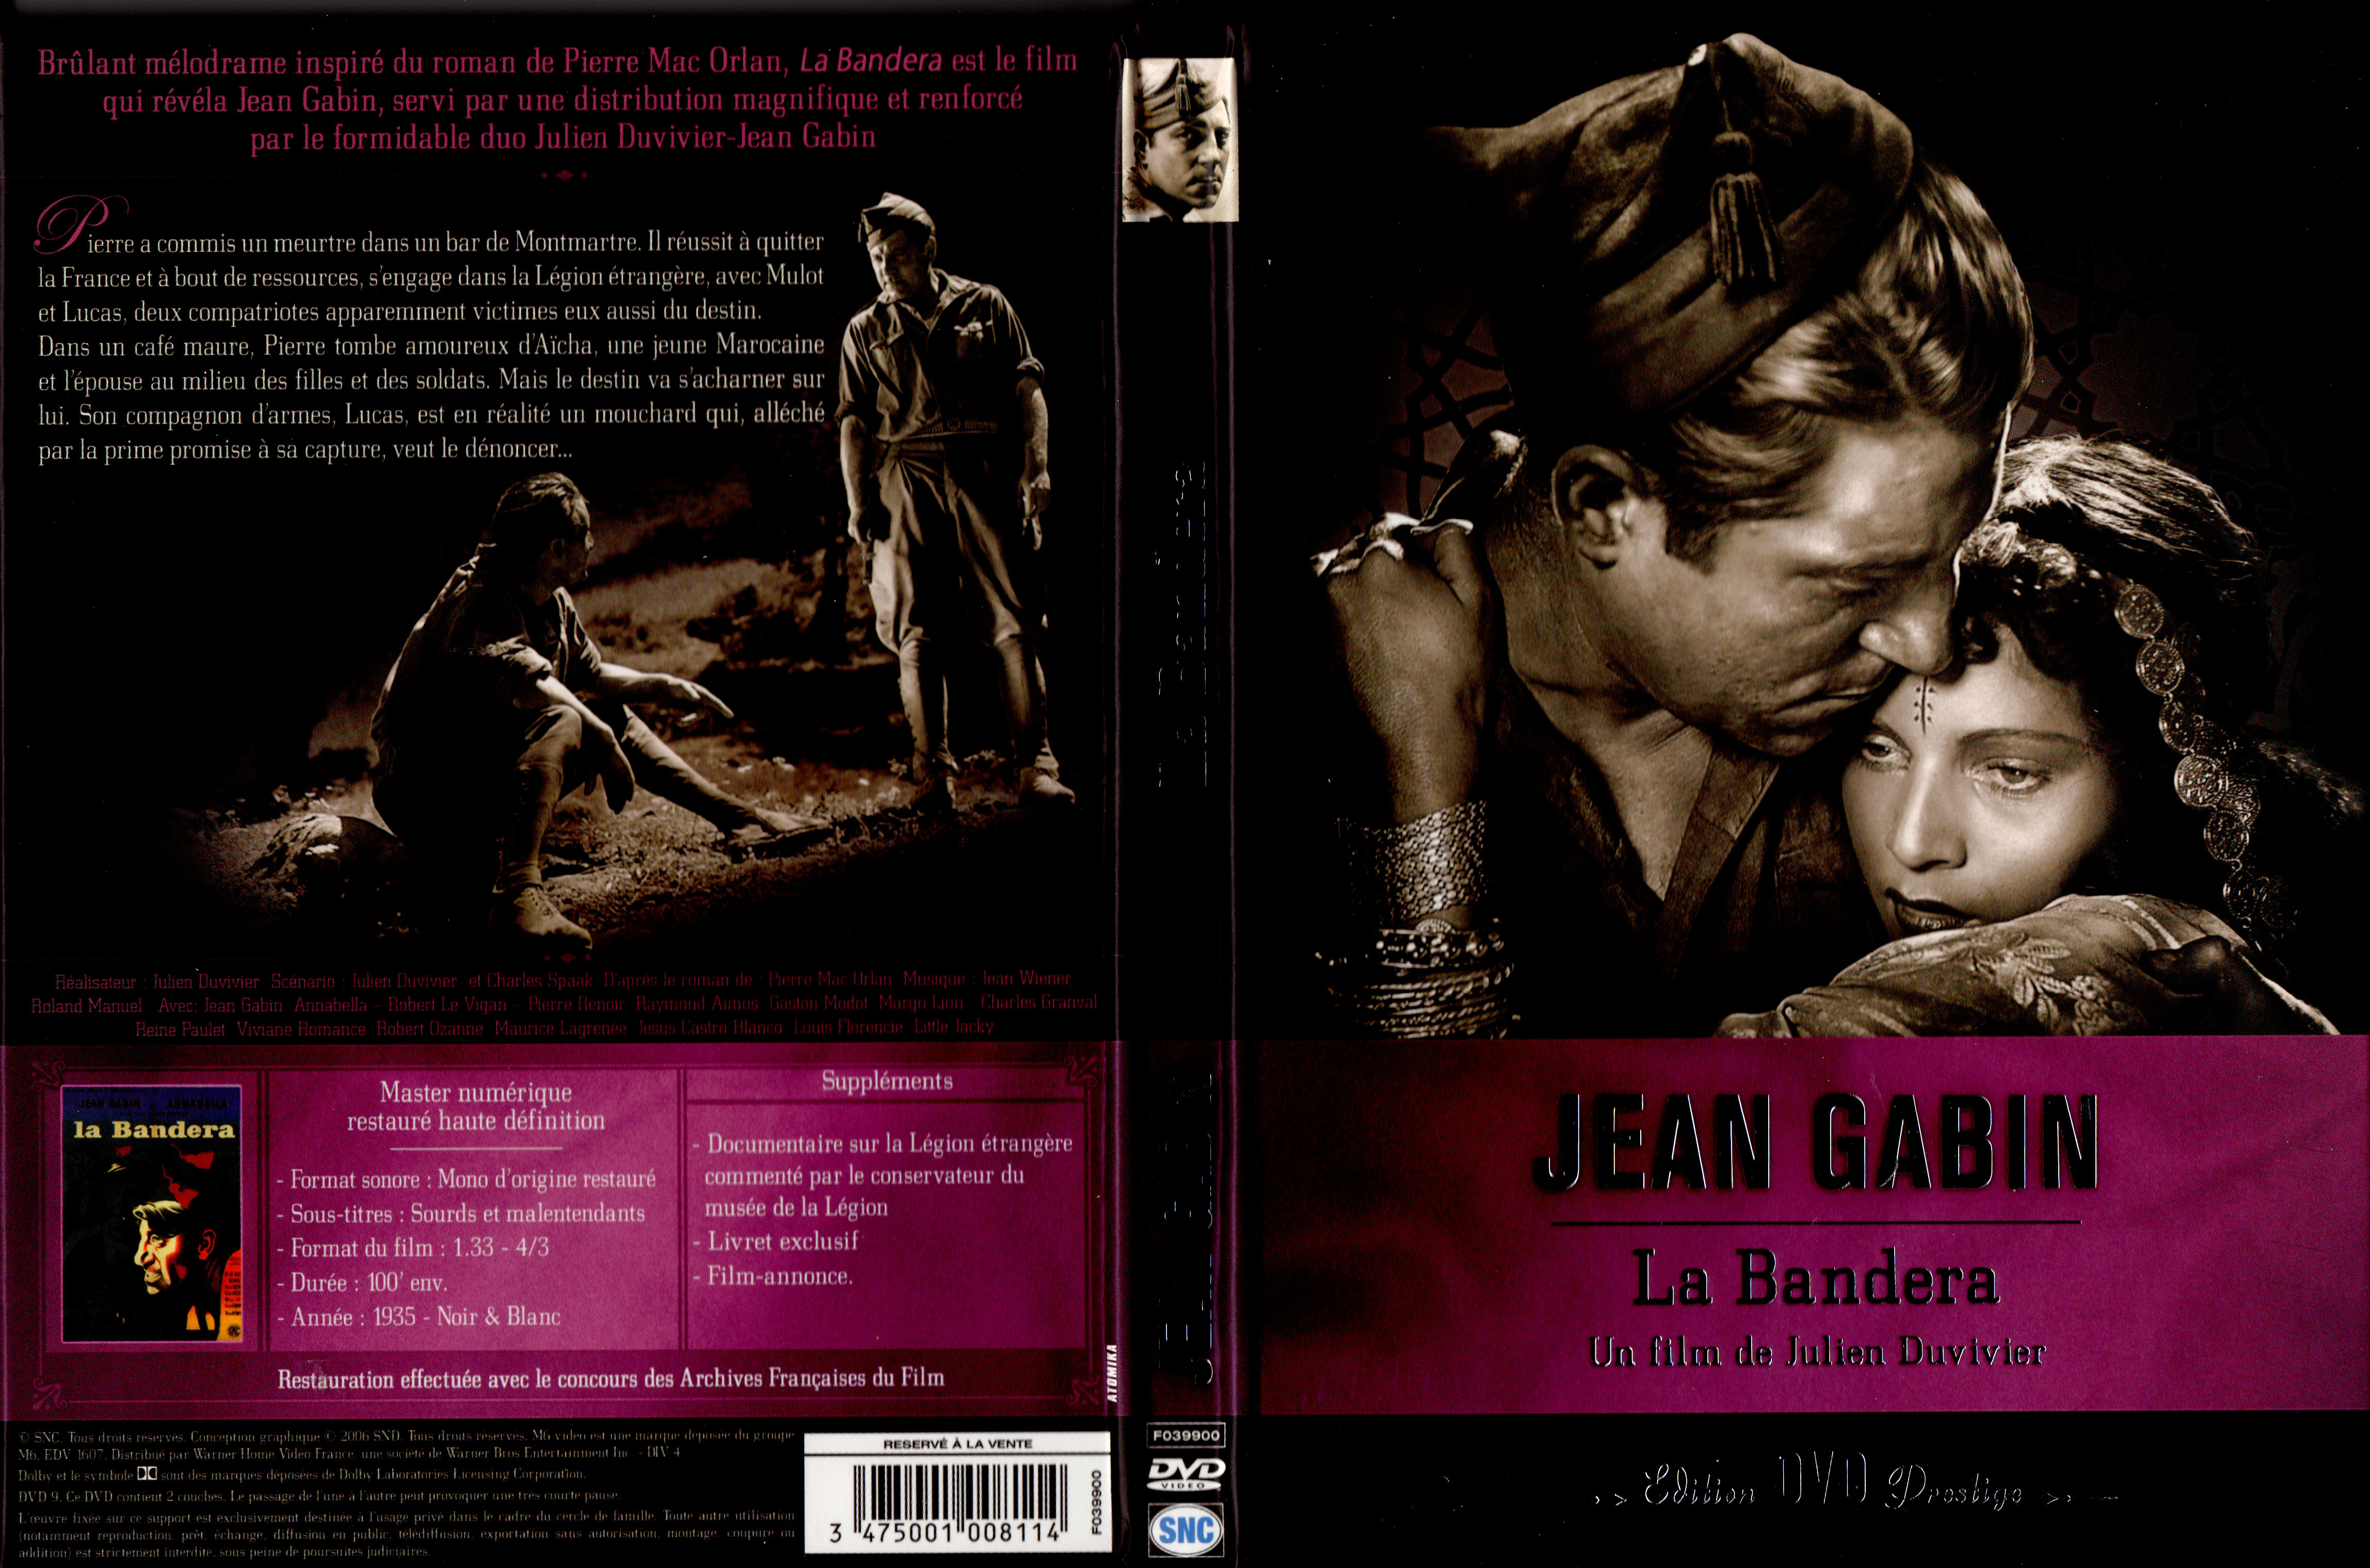 Jaquette DVD La bandera v3